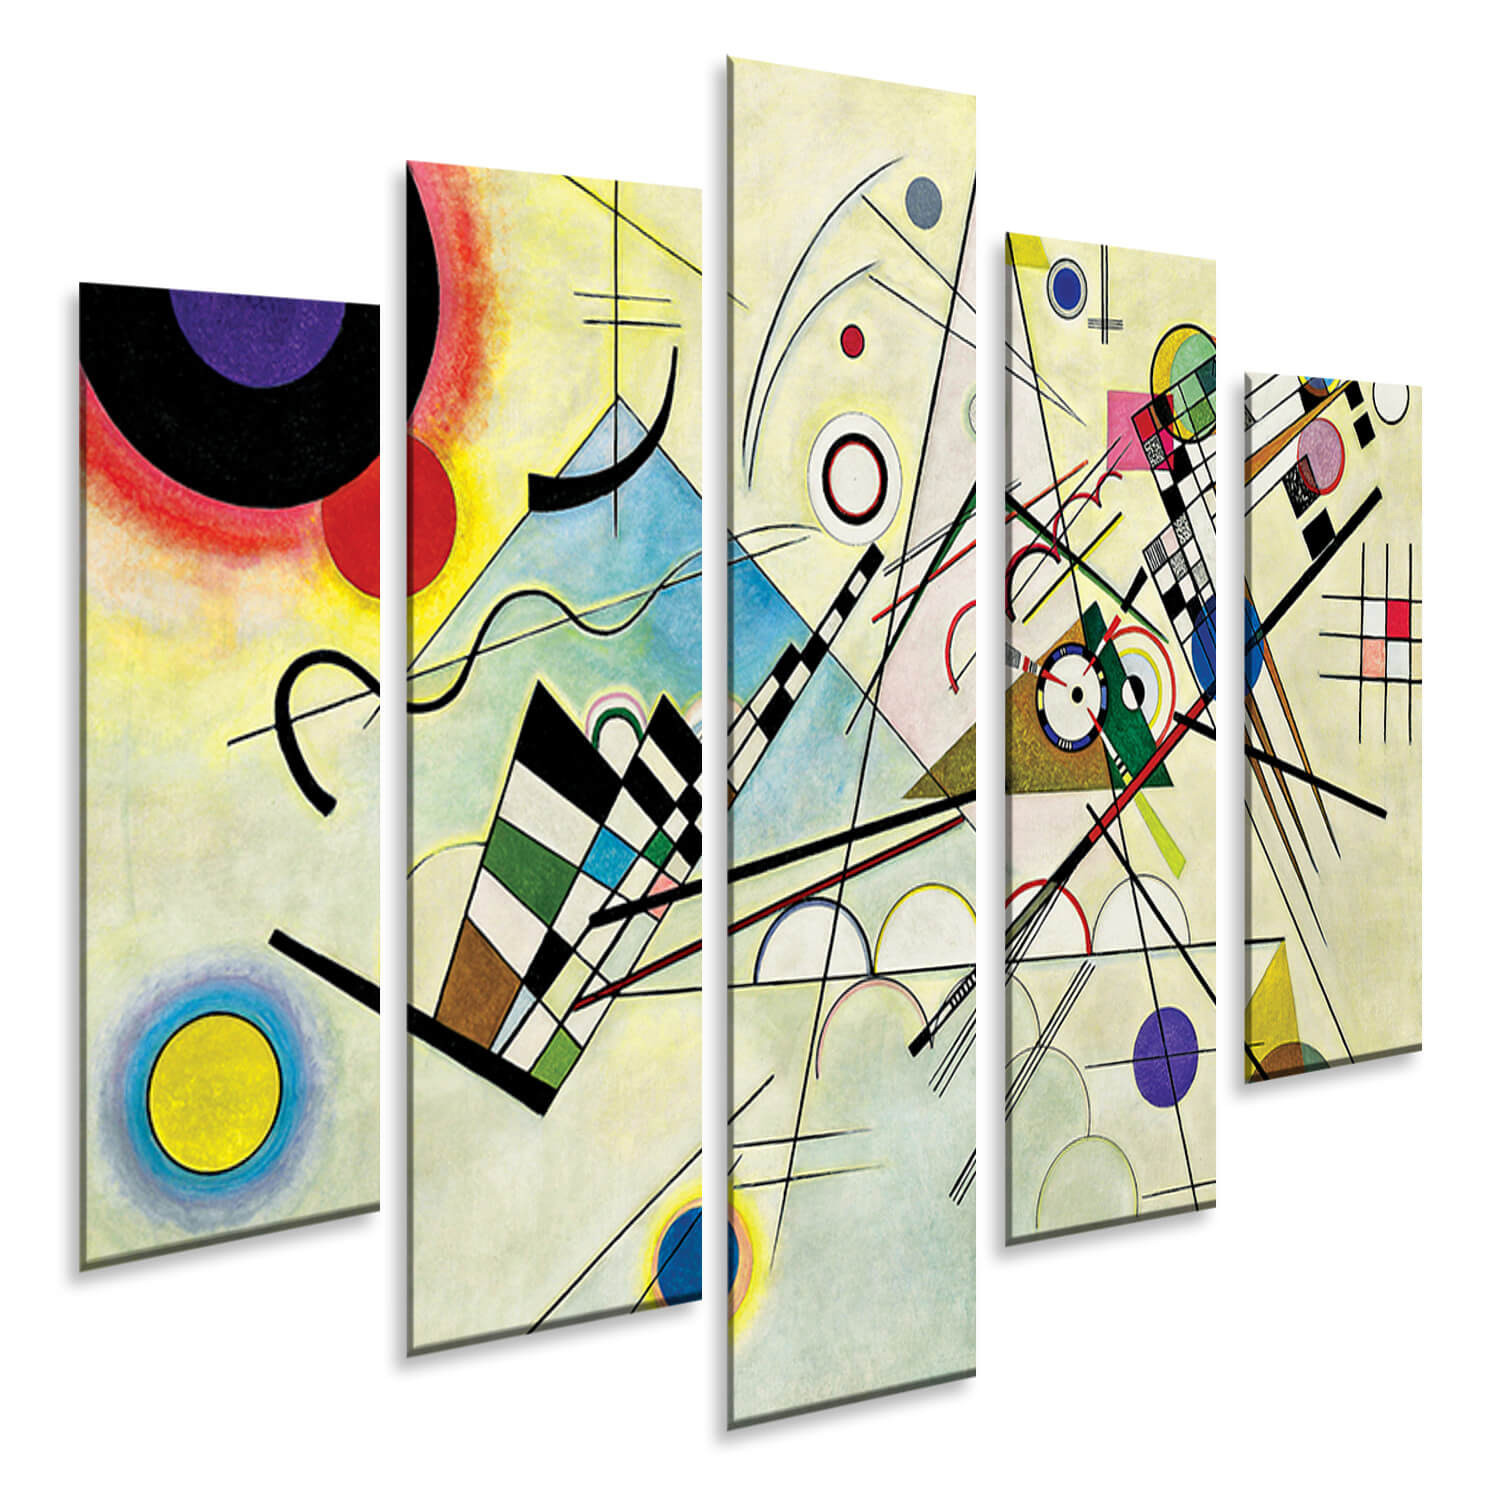 Composizione-n8-Kandinsky-per-parete-salotto